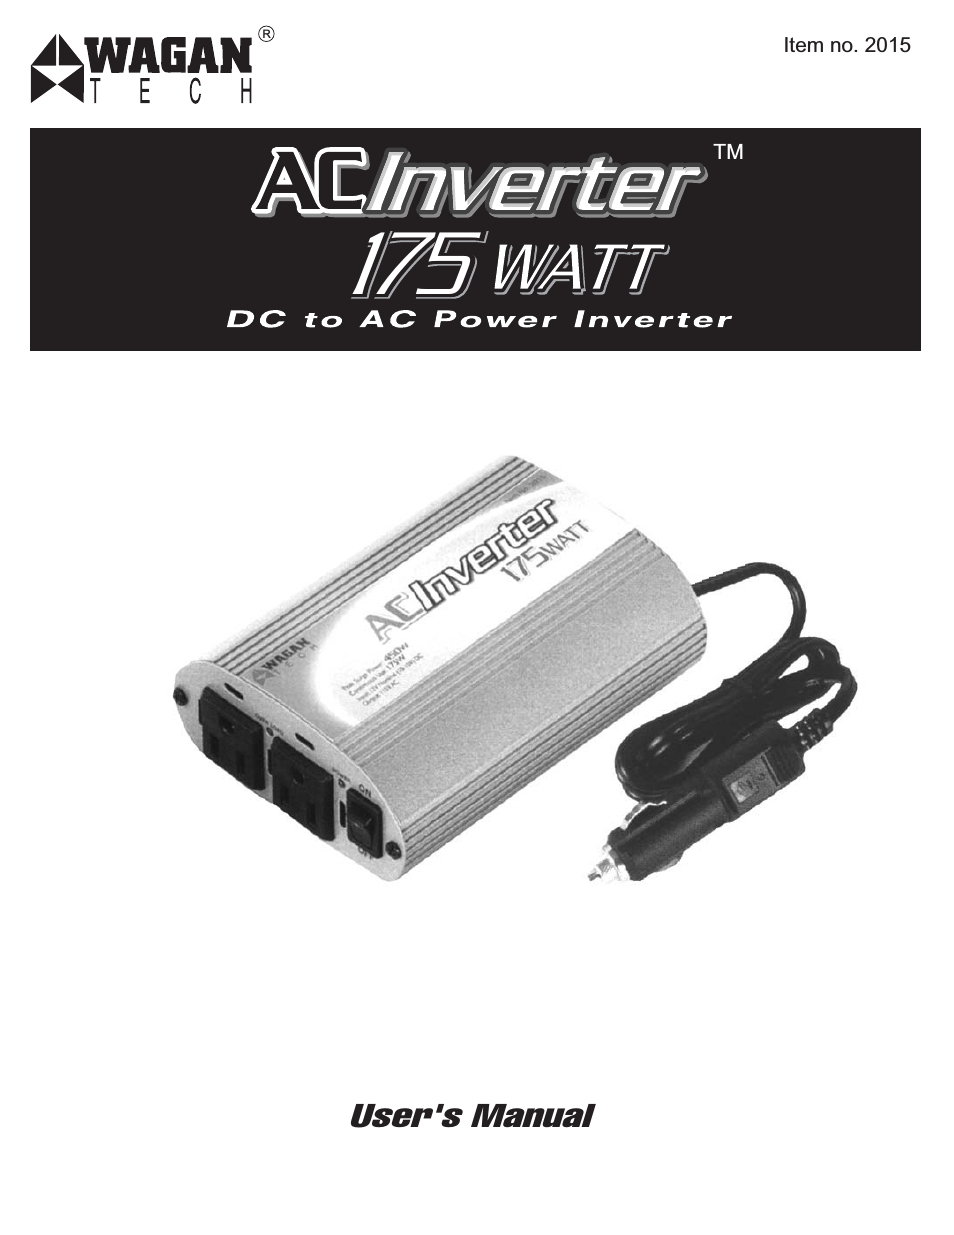 175 Watt AC to DC Power Inverter